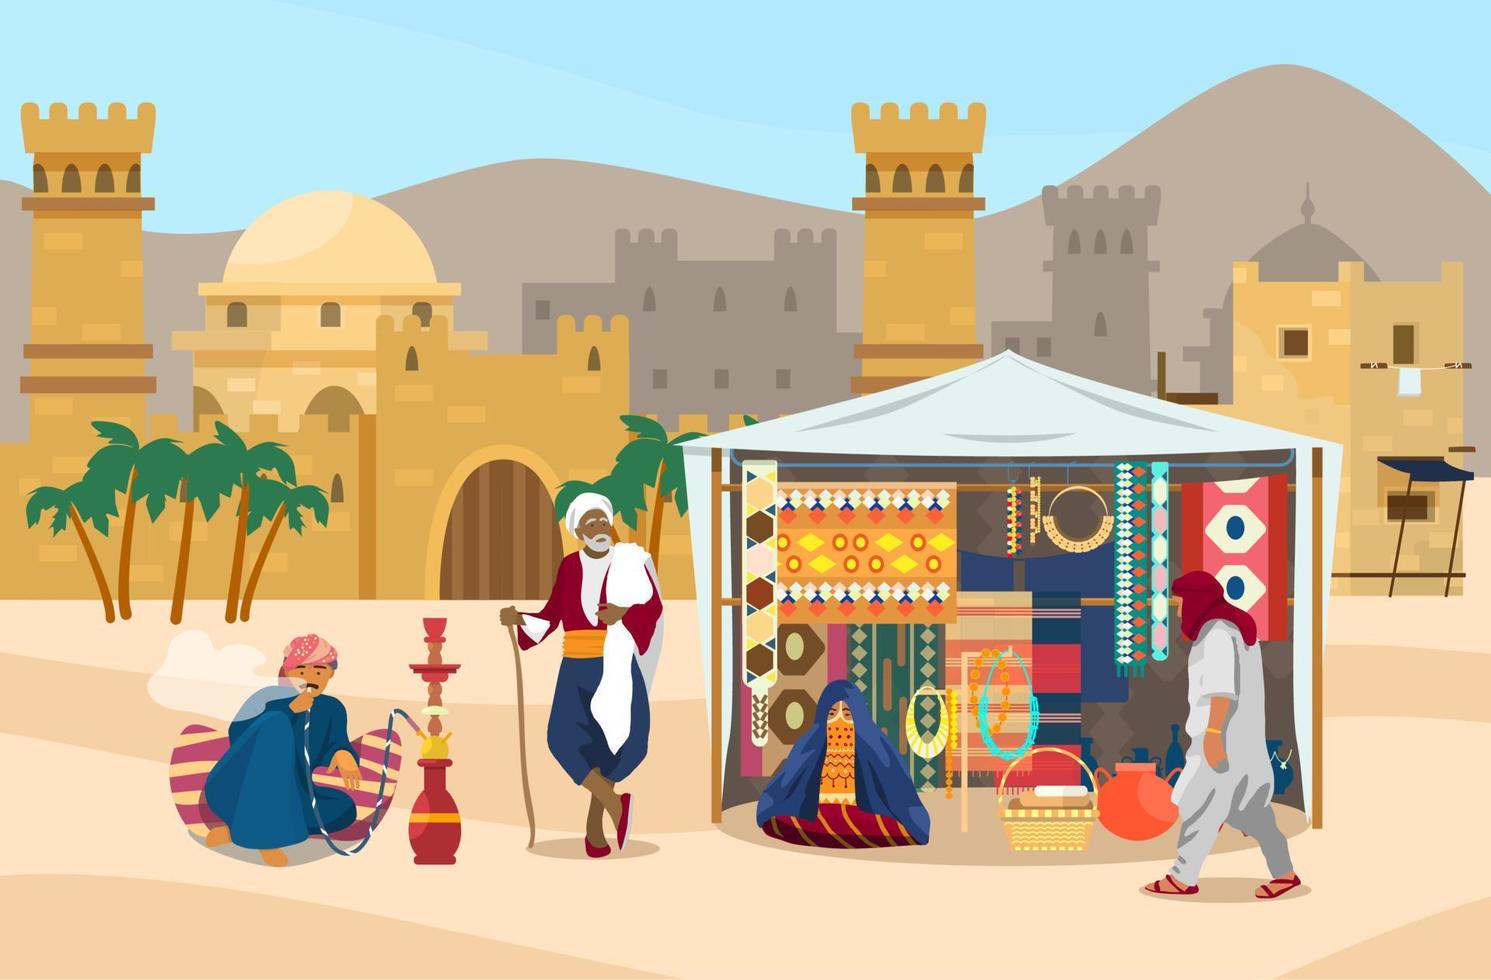 vektor illustration av mitten östra scen. arab människor i marknad med gammal stad på de bakgrund. gata affär med mattor, tyger, Smycken, keramik. förtäckt kvinna, man rökning vattenpipa.